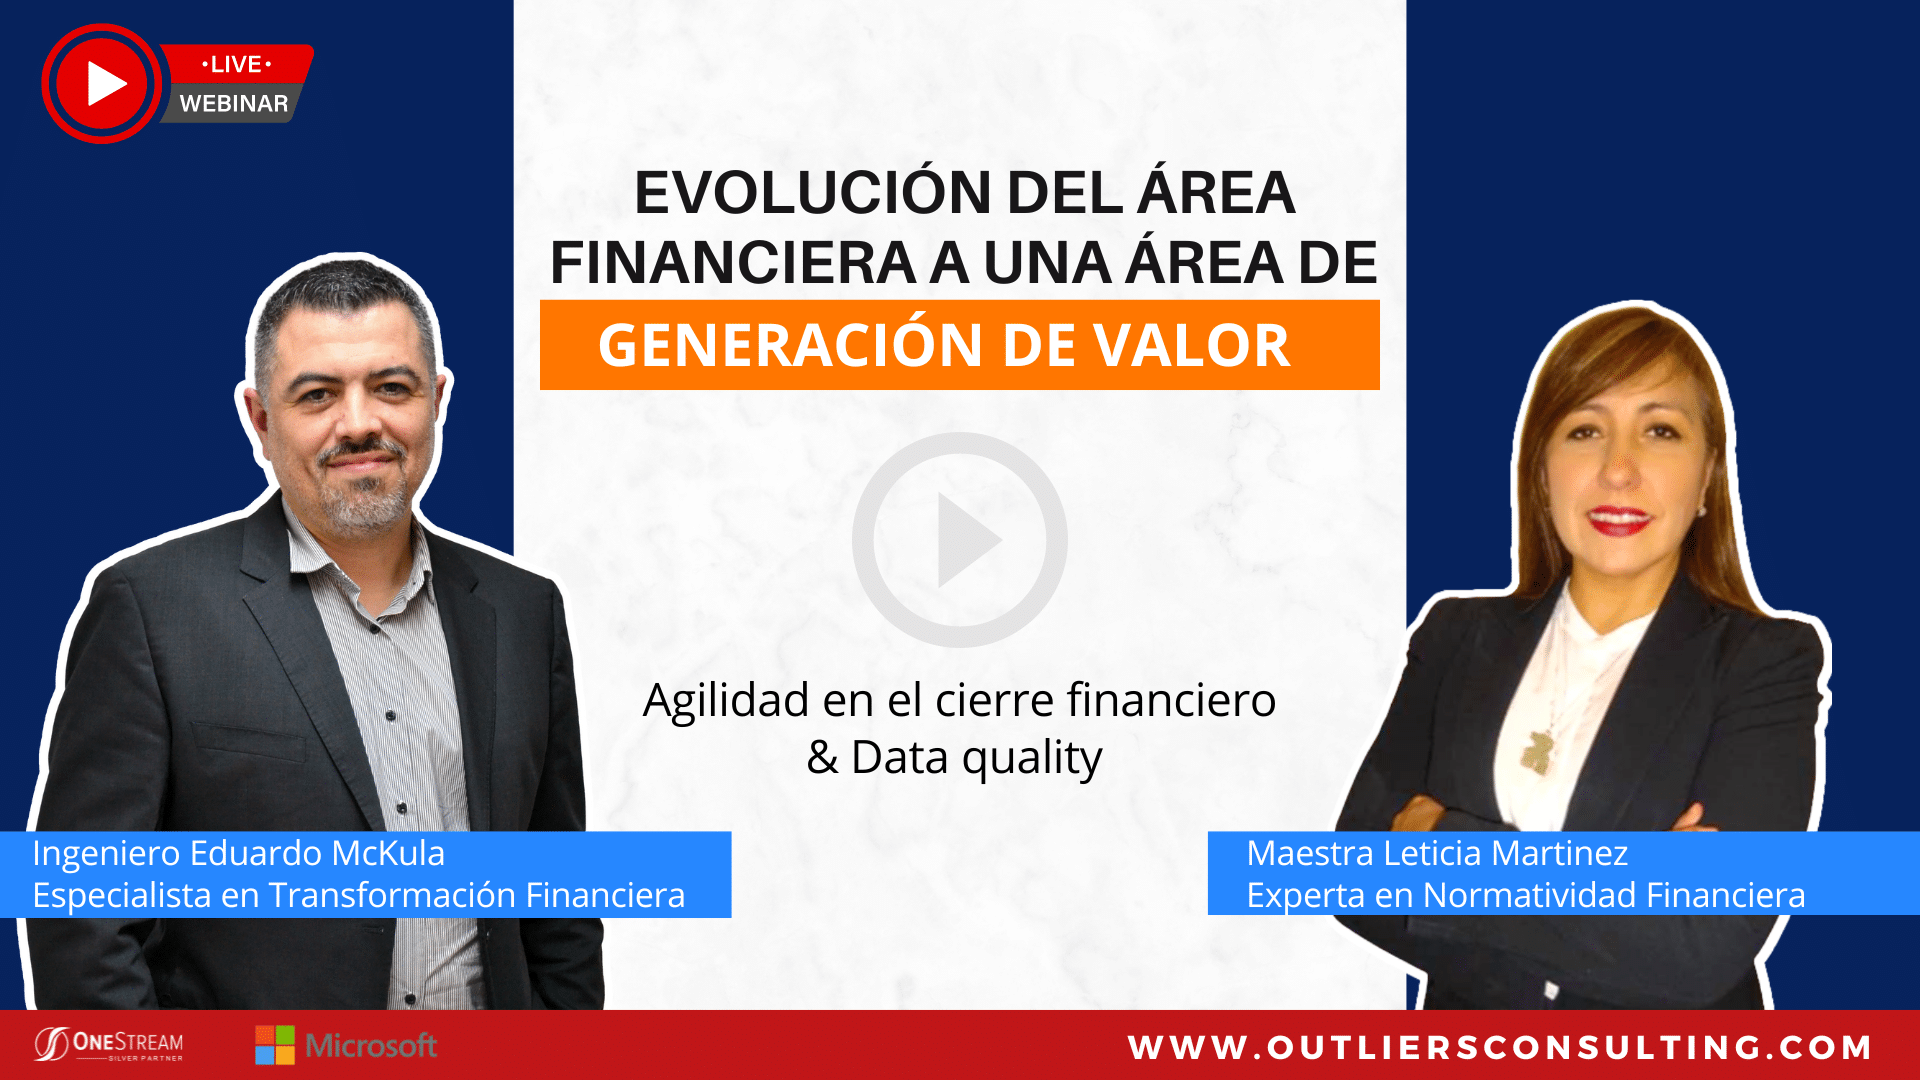 WEBINAR - EVOLUCIÓN DEL ÁREA FINANCIERA A UNA ÁREA DE GENERACIÓN DE VALOR